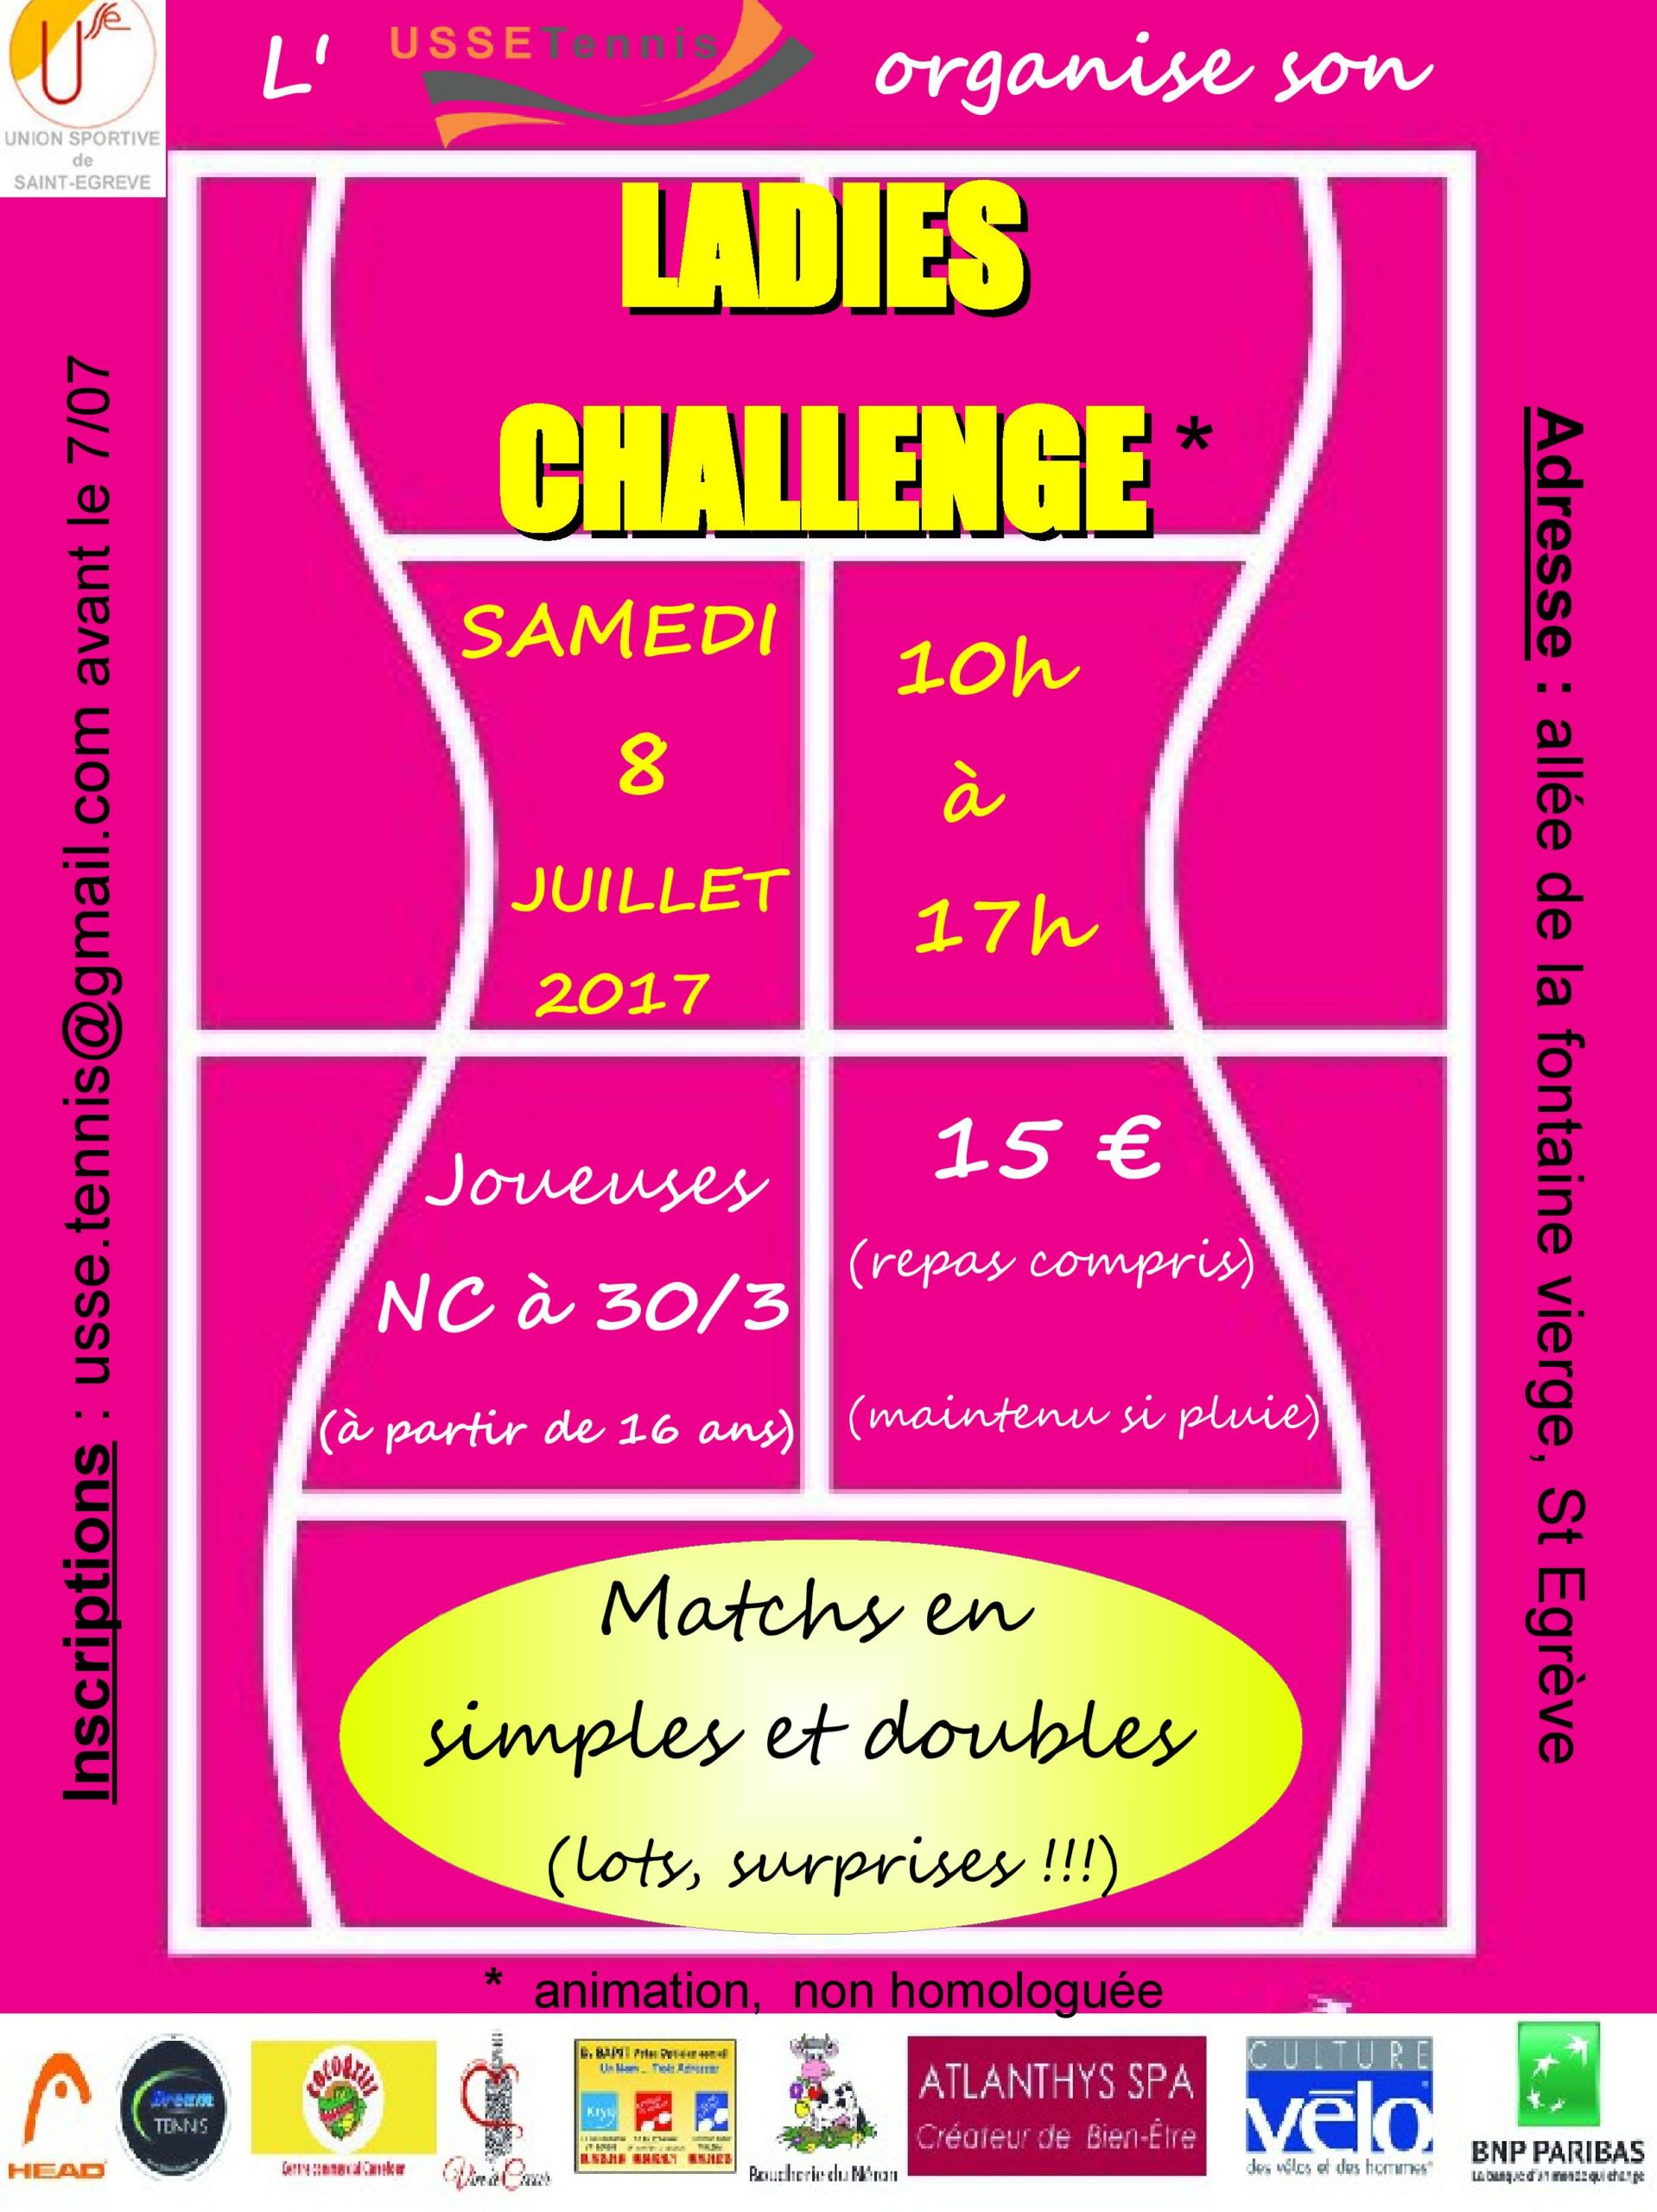 Lire la suite à propos de l’article Ladies Challenge samedi 8 juillet 10h-17h au club